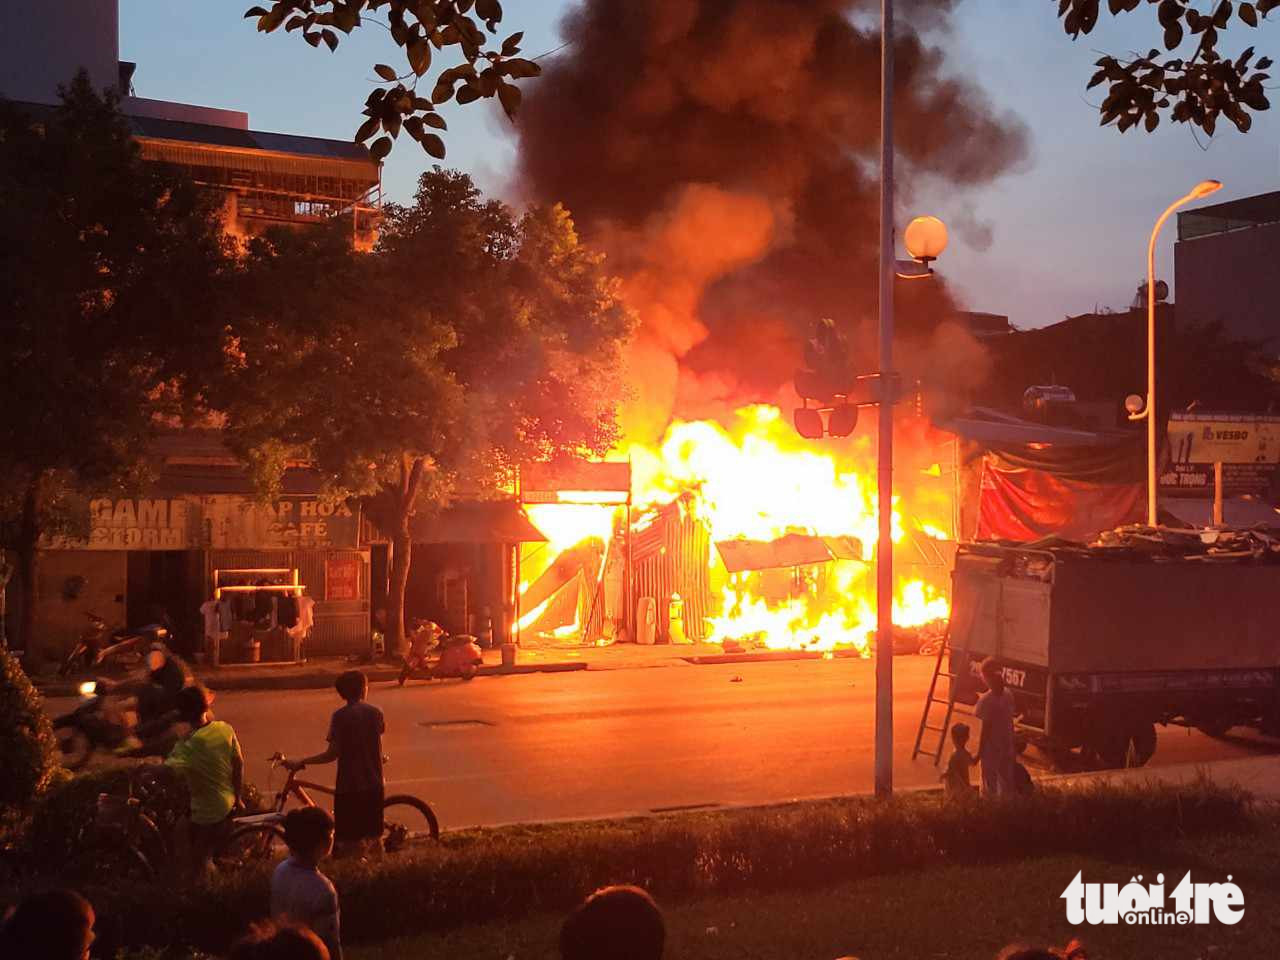 Makeshift house fire kills 3 family members, injures 1 in Hanoi